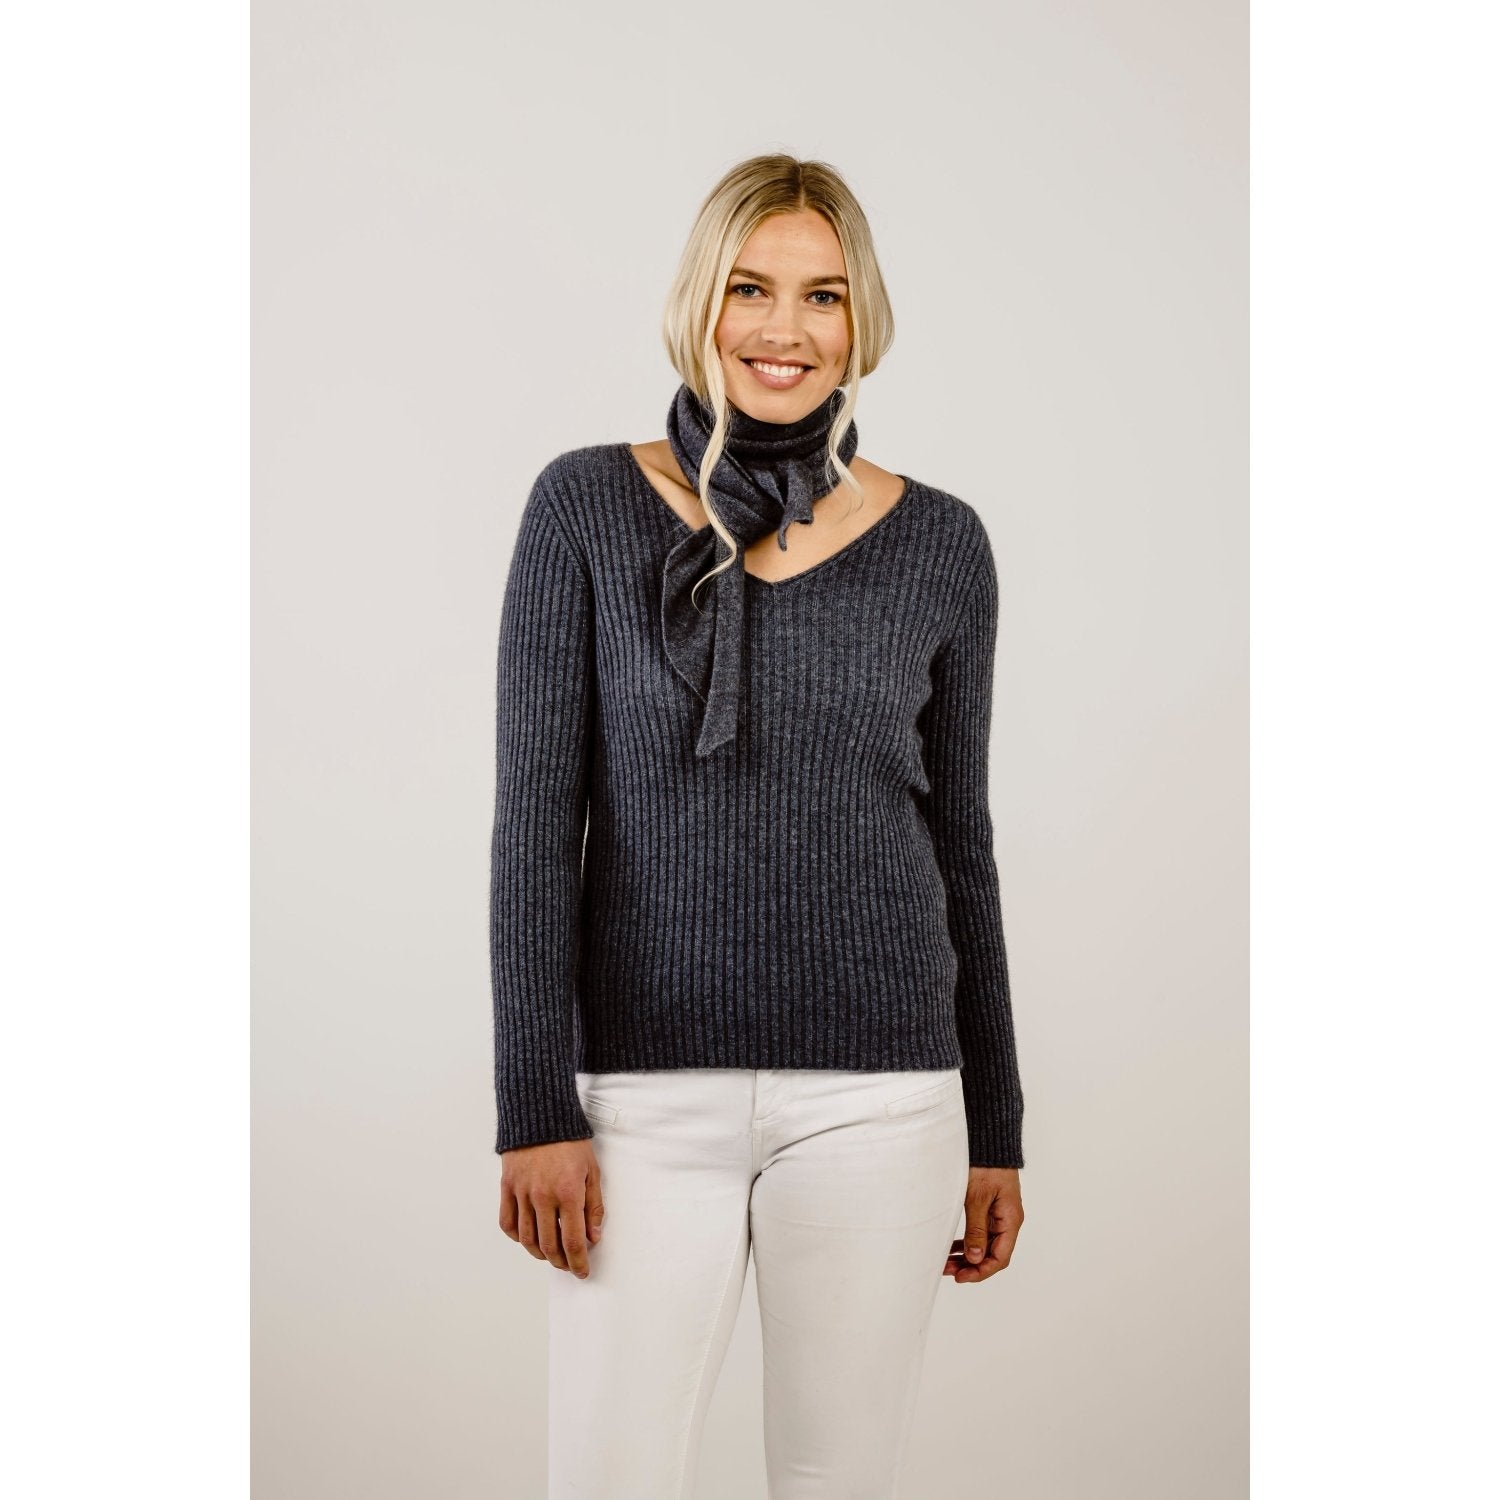 Possum Merino women's V neck sweater - Kapeka NZ